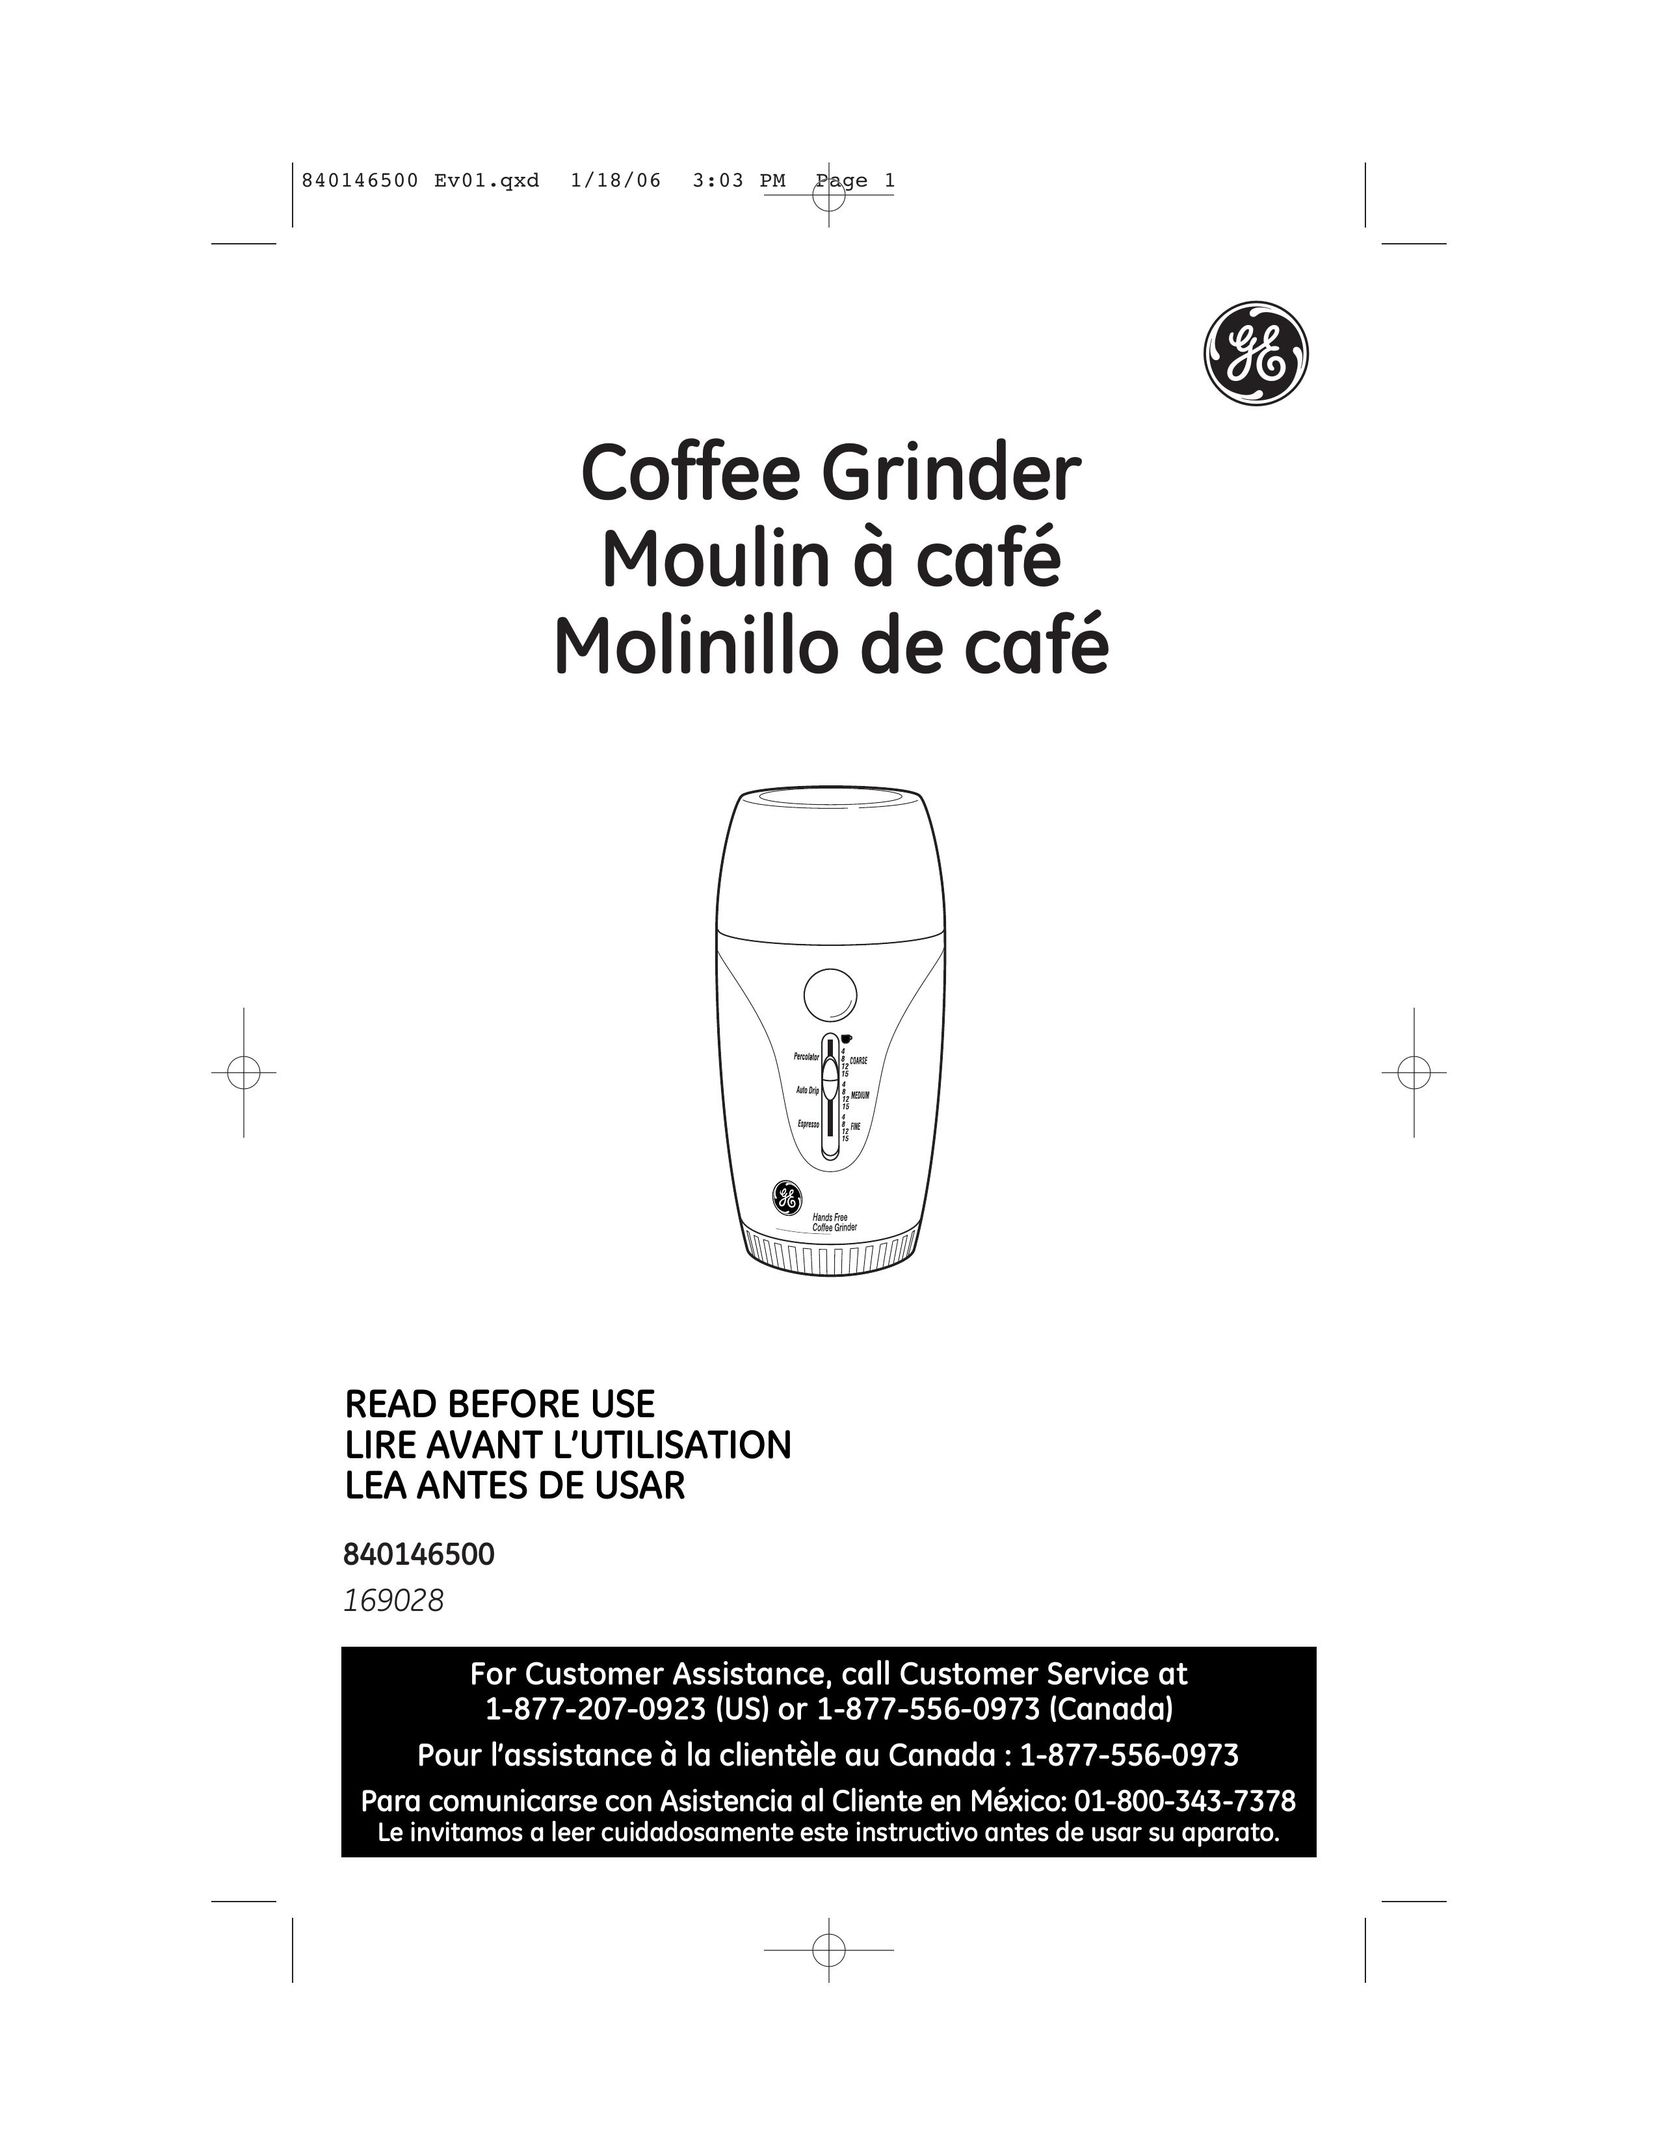 GE 169028 Coffee Grinder User Manual